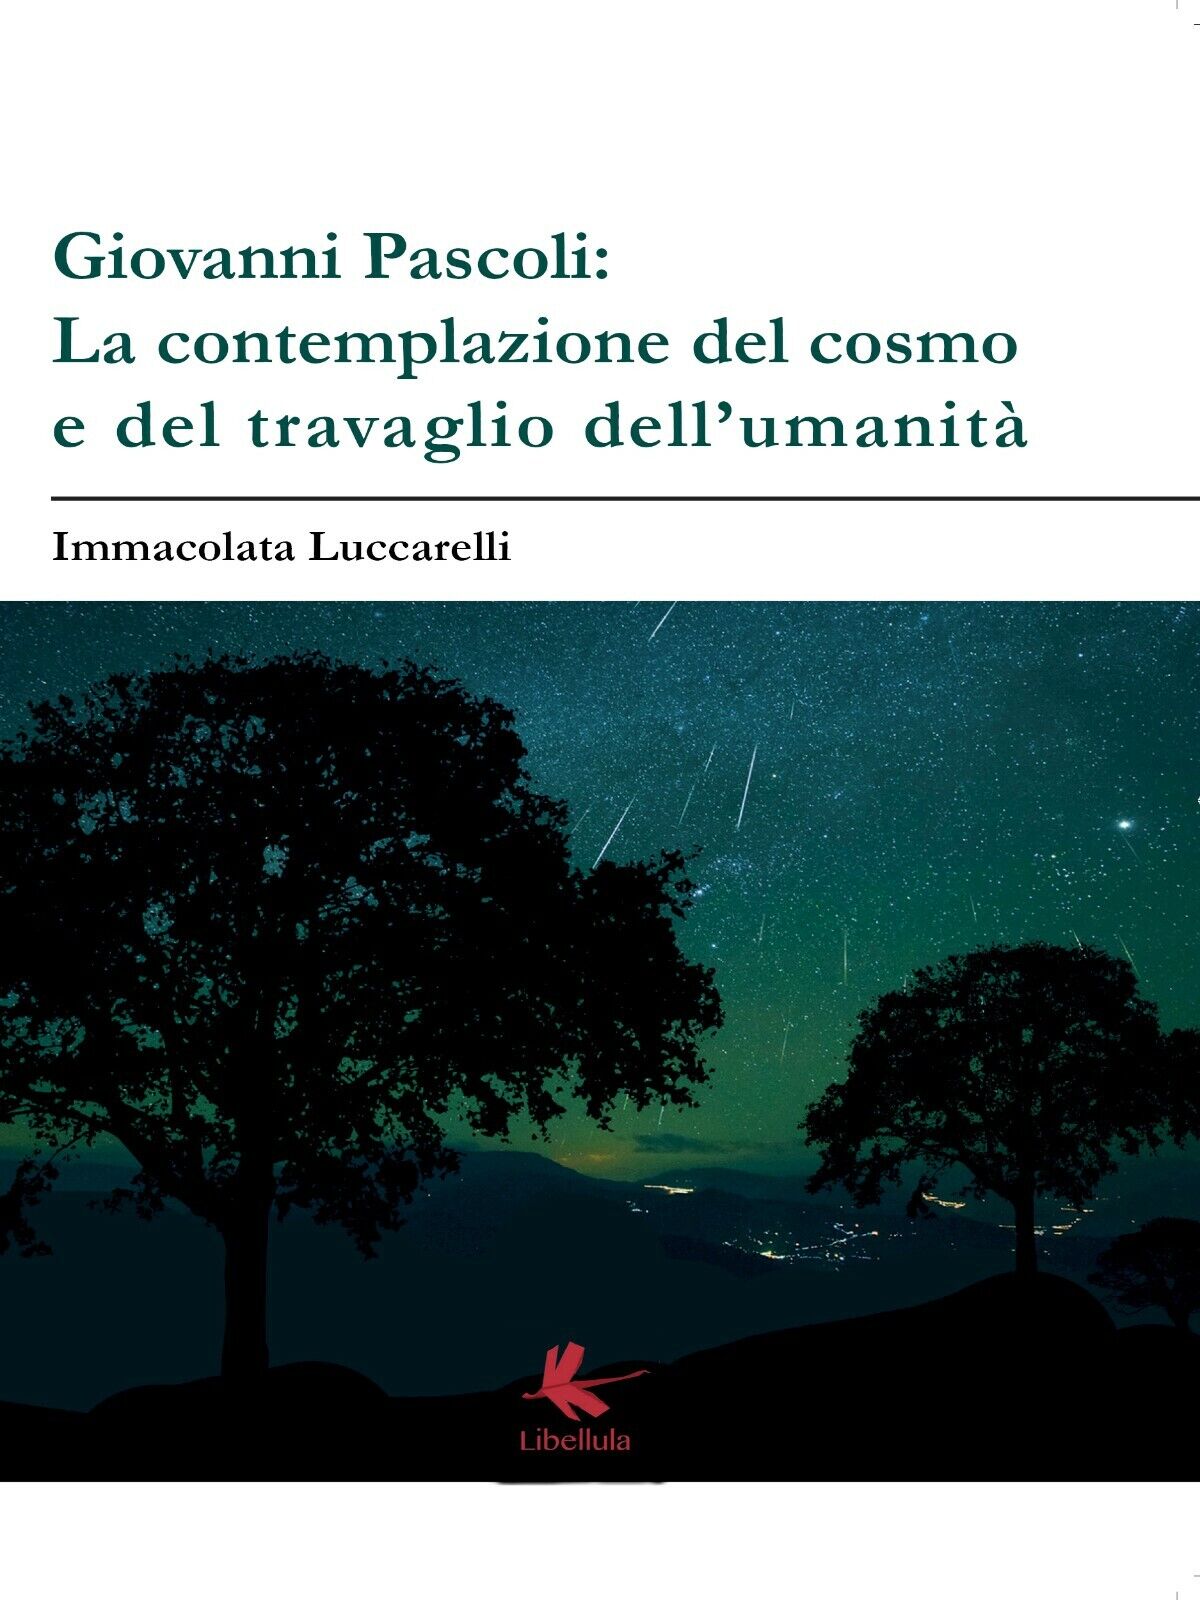 Giovanni Pascoli: LA CONTEMPLAZIONE DEL COSMO E DEL TRAVAGLIO DELL'UMANITA?